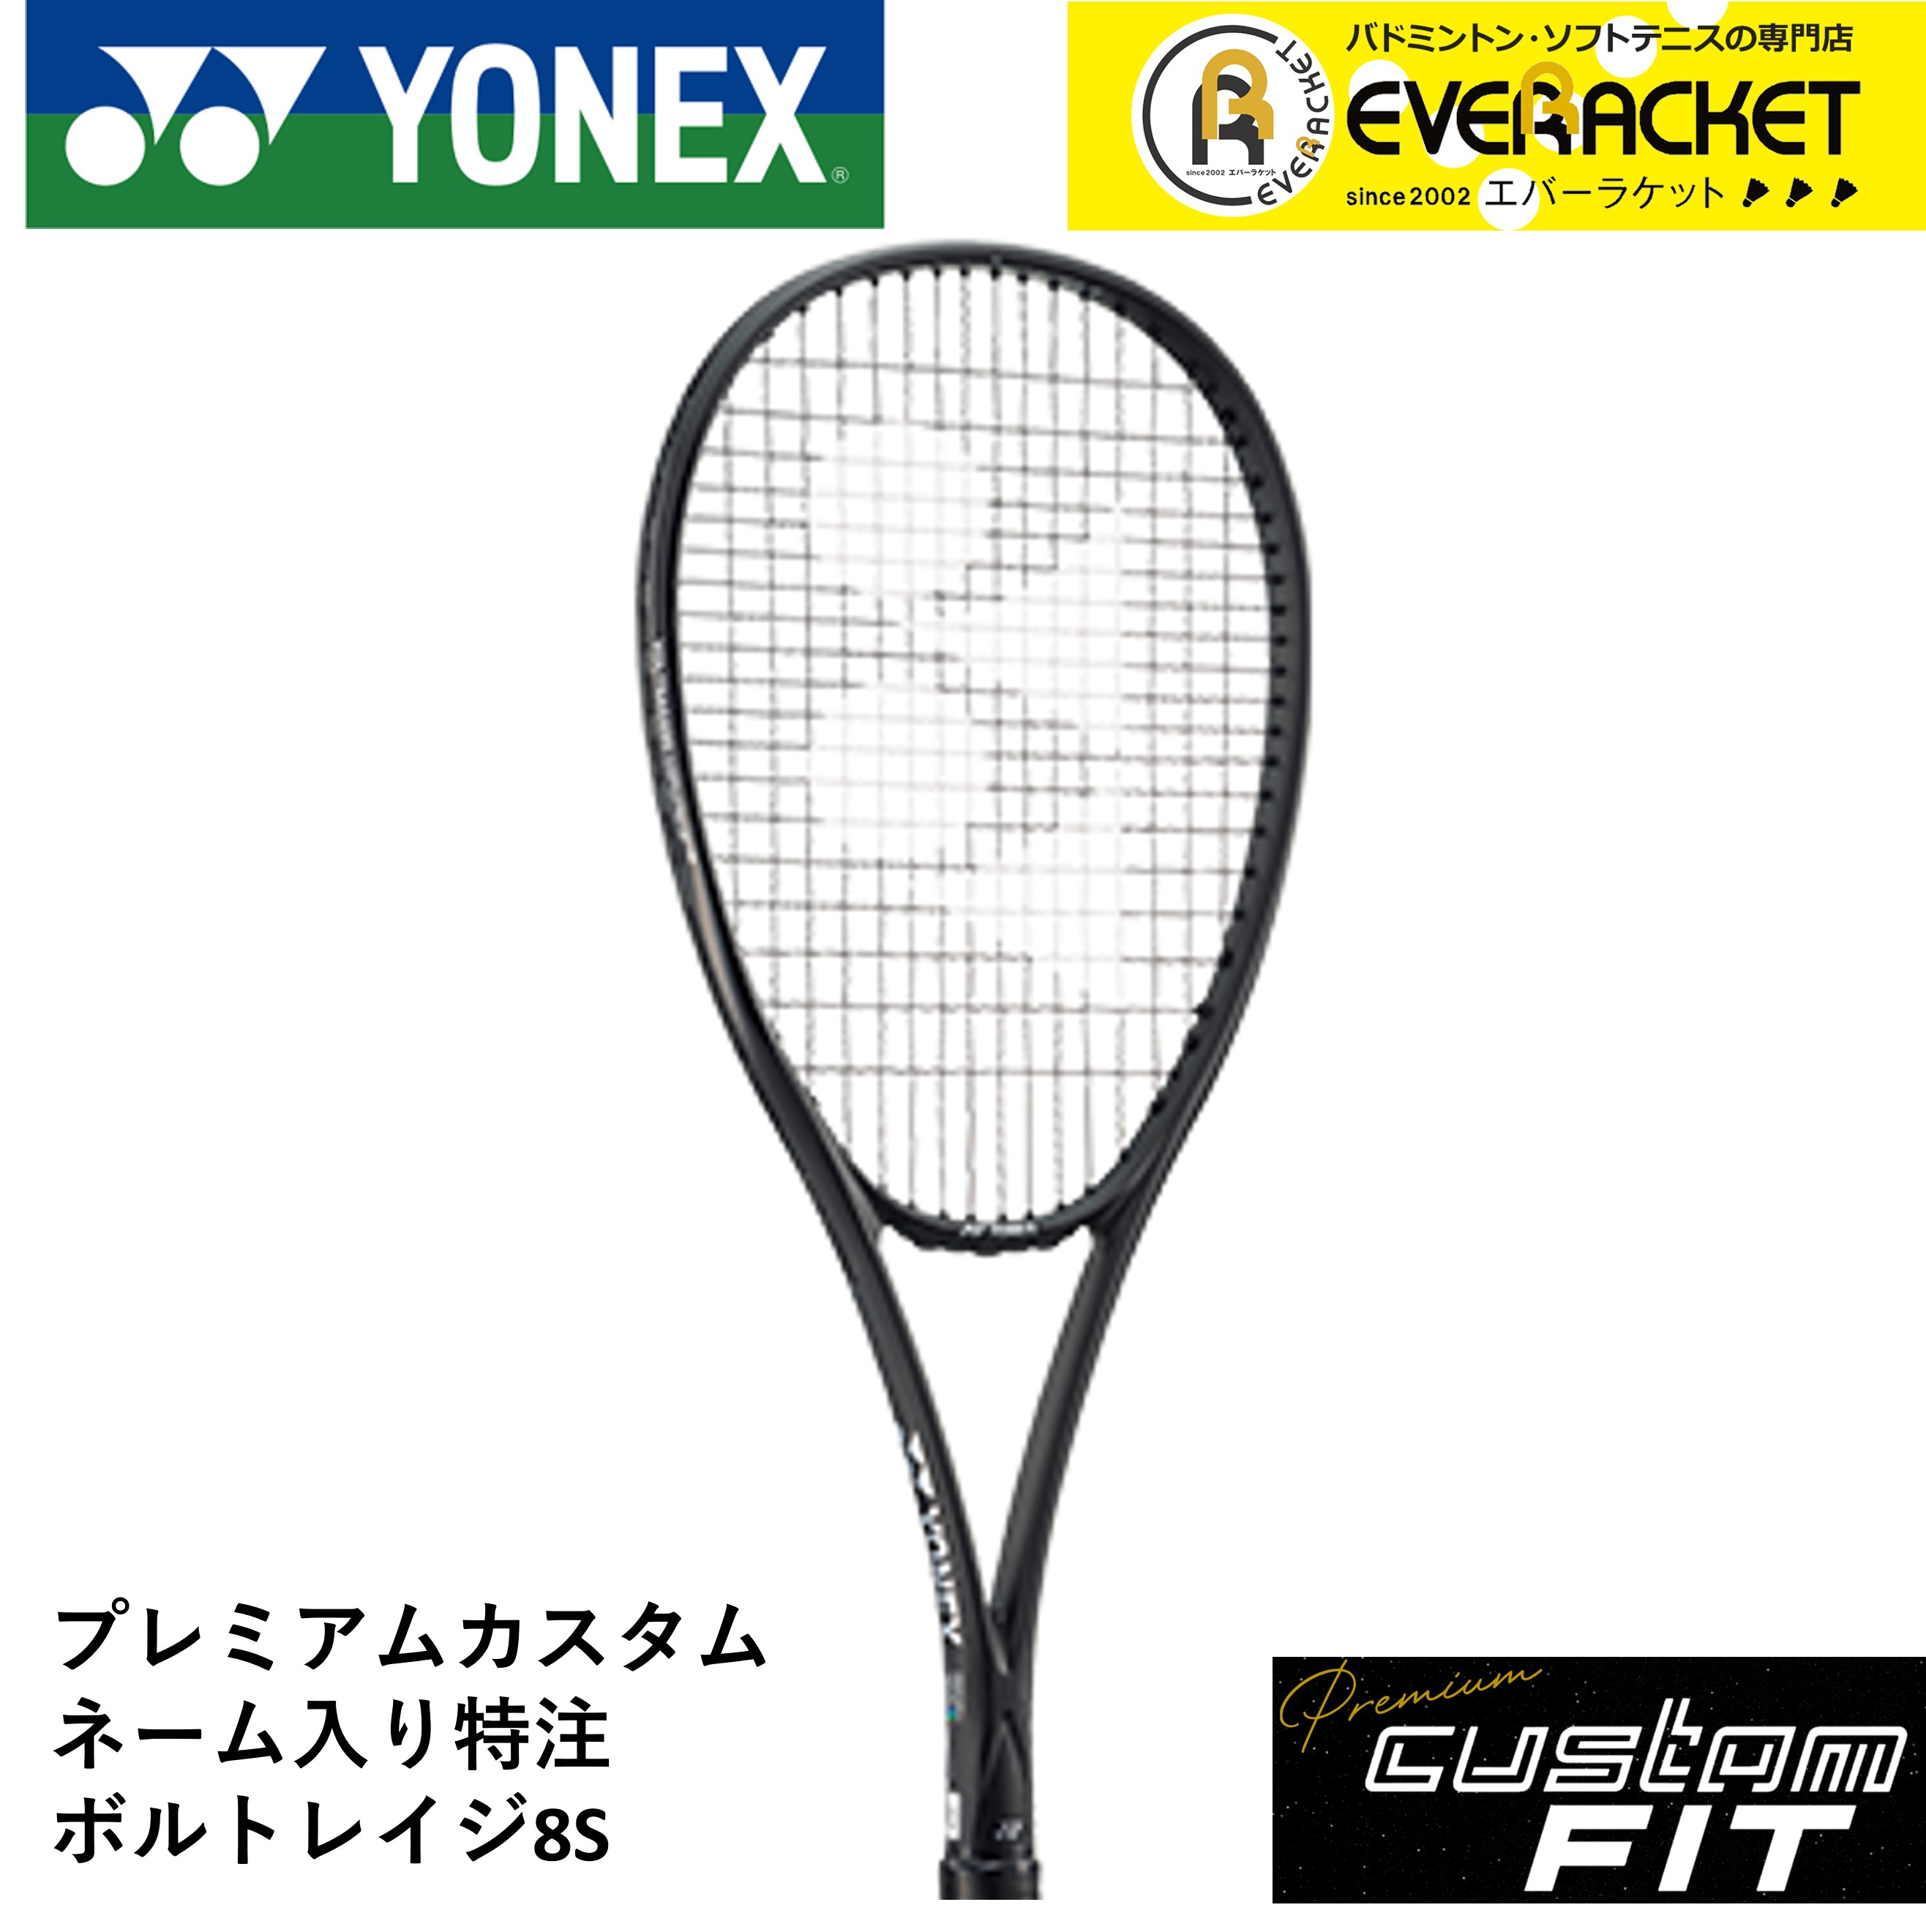 カスタムフ ヨネックス ボルトレイジ8S ソフトテニスラケット YONEX フレーム